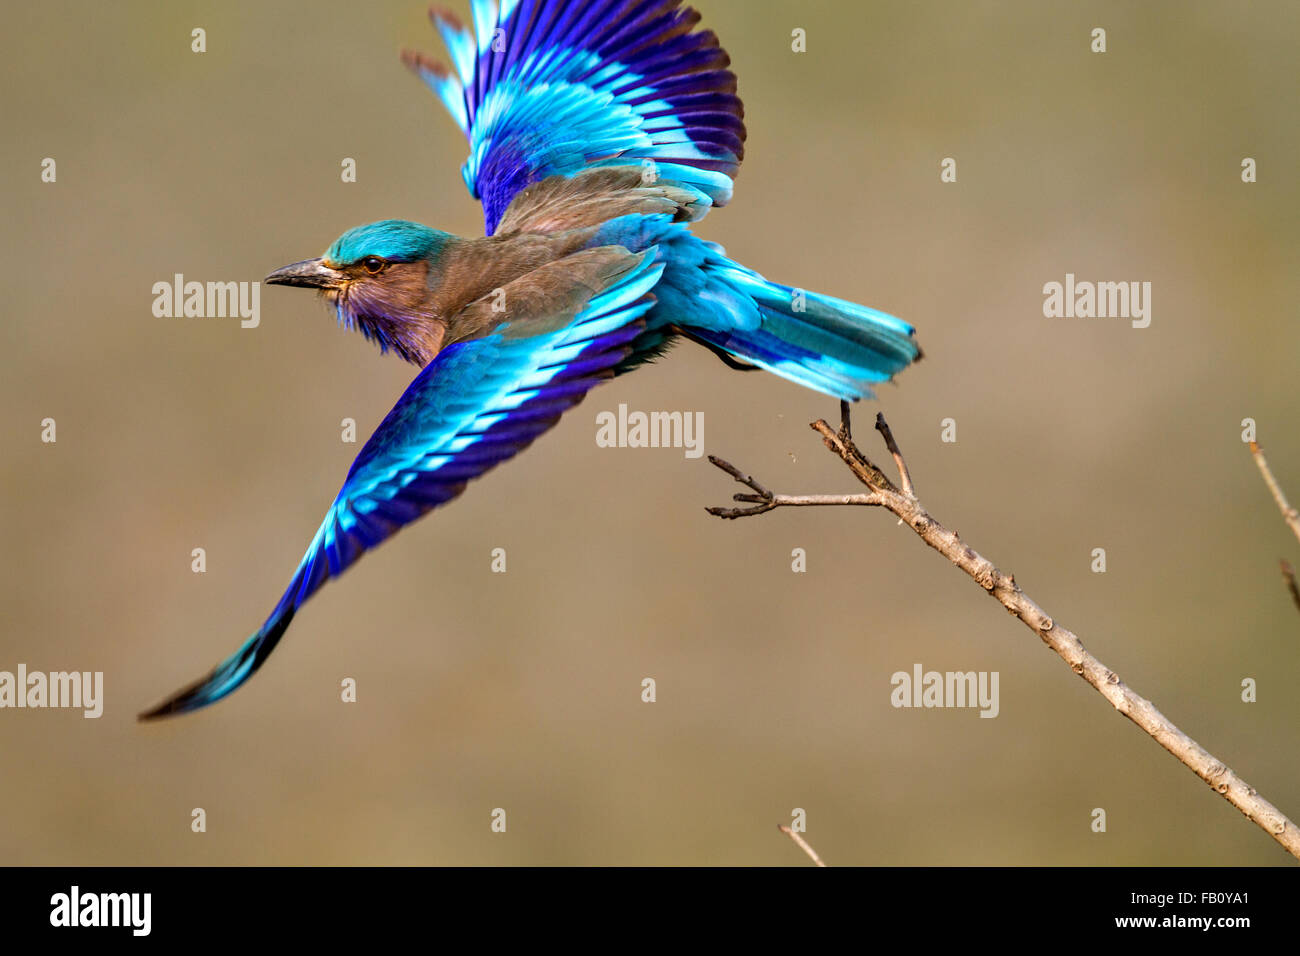 Kaziranga bird hi-res stock photography and images - Alamy